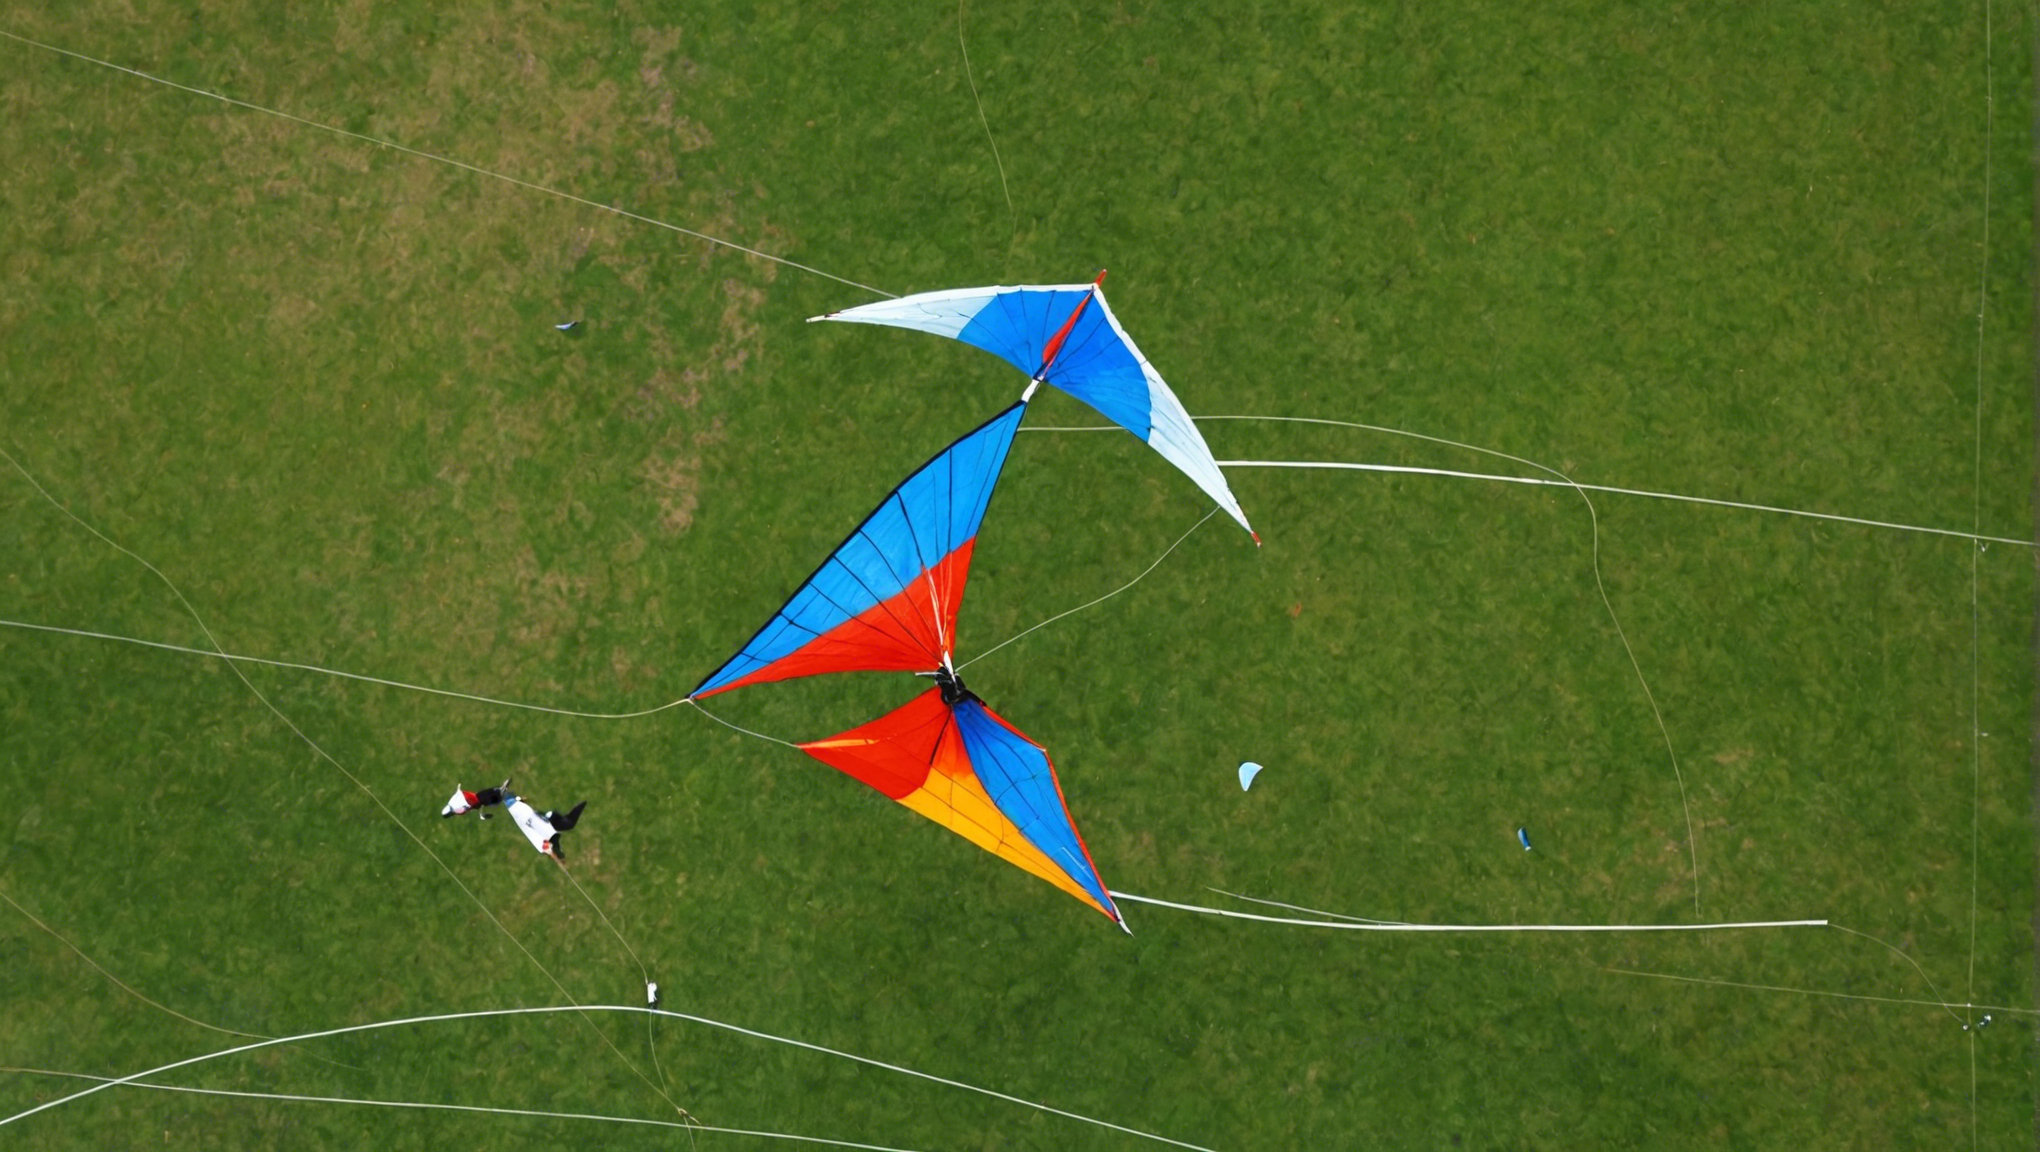 découvrez notre guide du jeu aérien qui vous emmène dans l'univers captivant des cerfs-volants. laissez-vous emporter par notre expertise sur les kites et leur pratique passionnante.